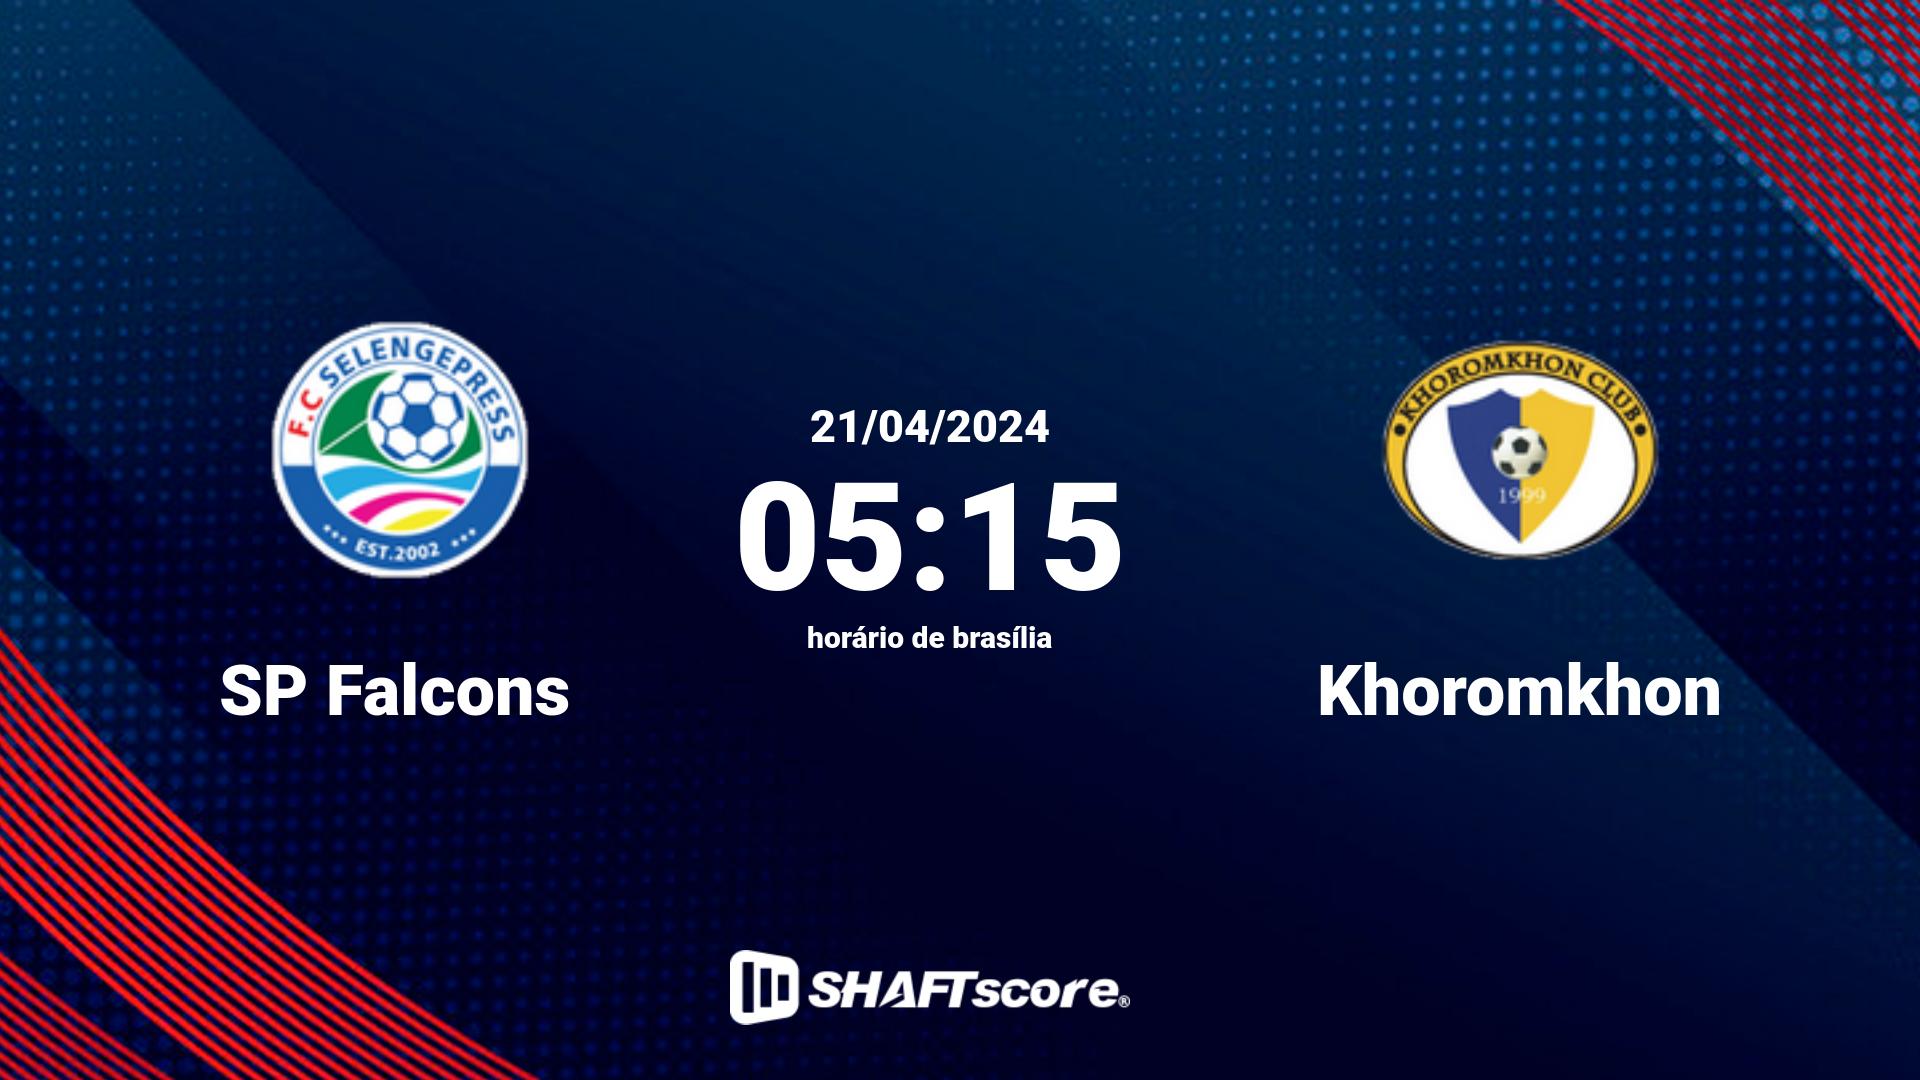 Estatísticas do jogo SP Falcons vs Khoromkhon 21.04 05:15